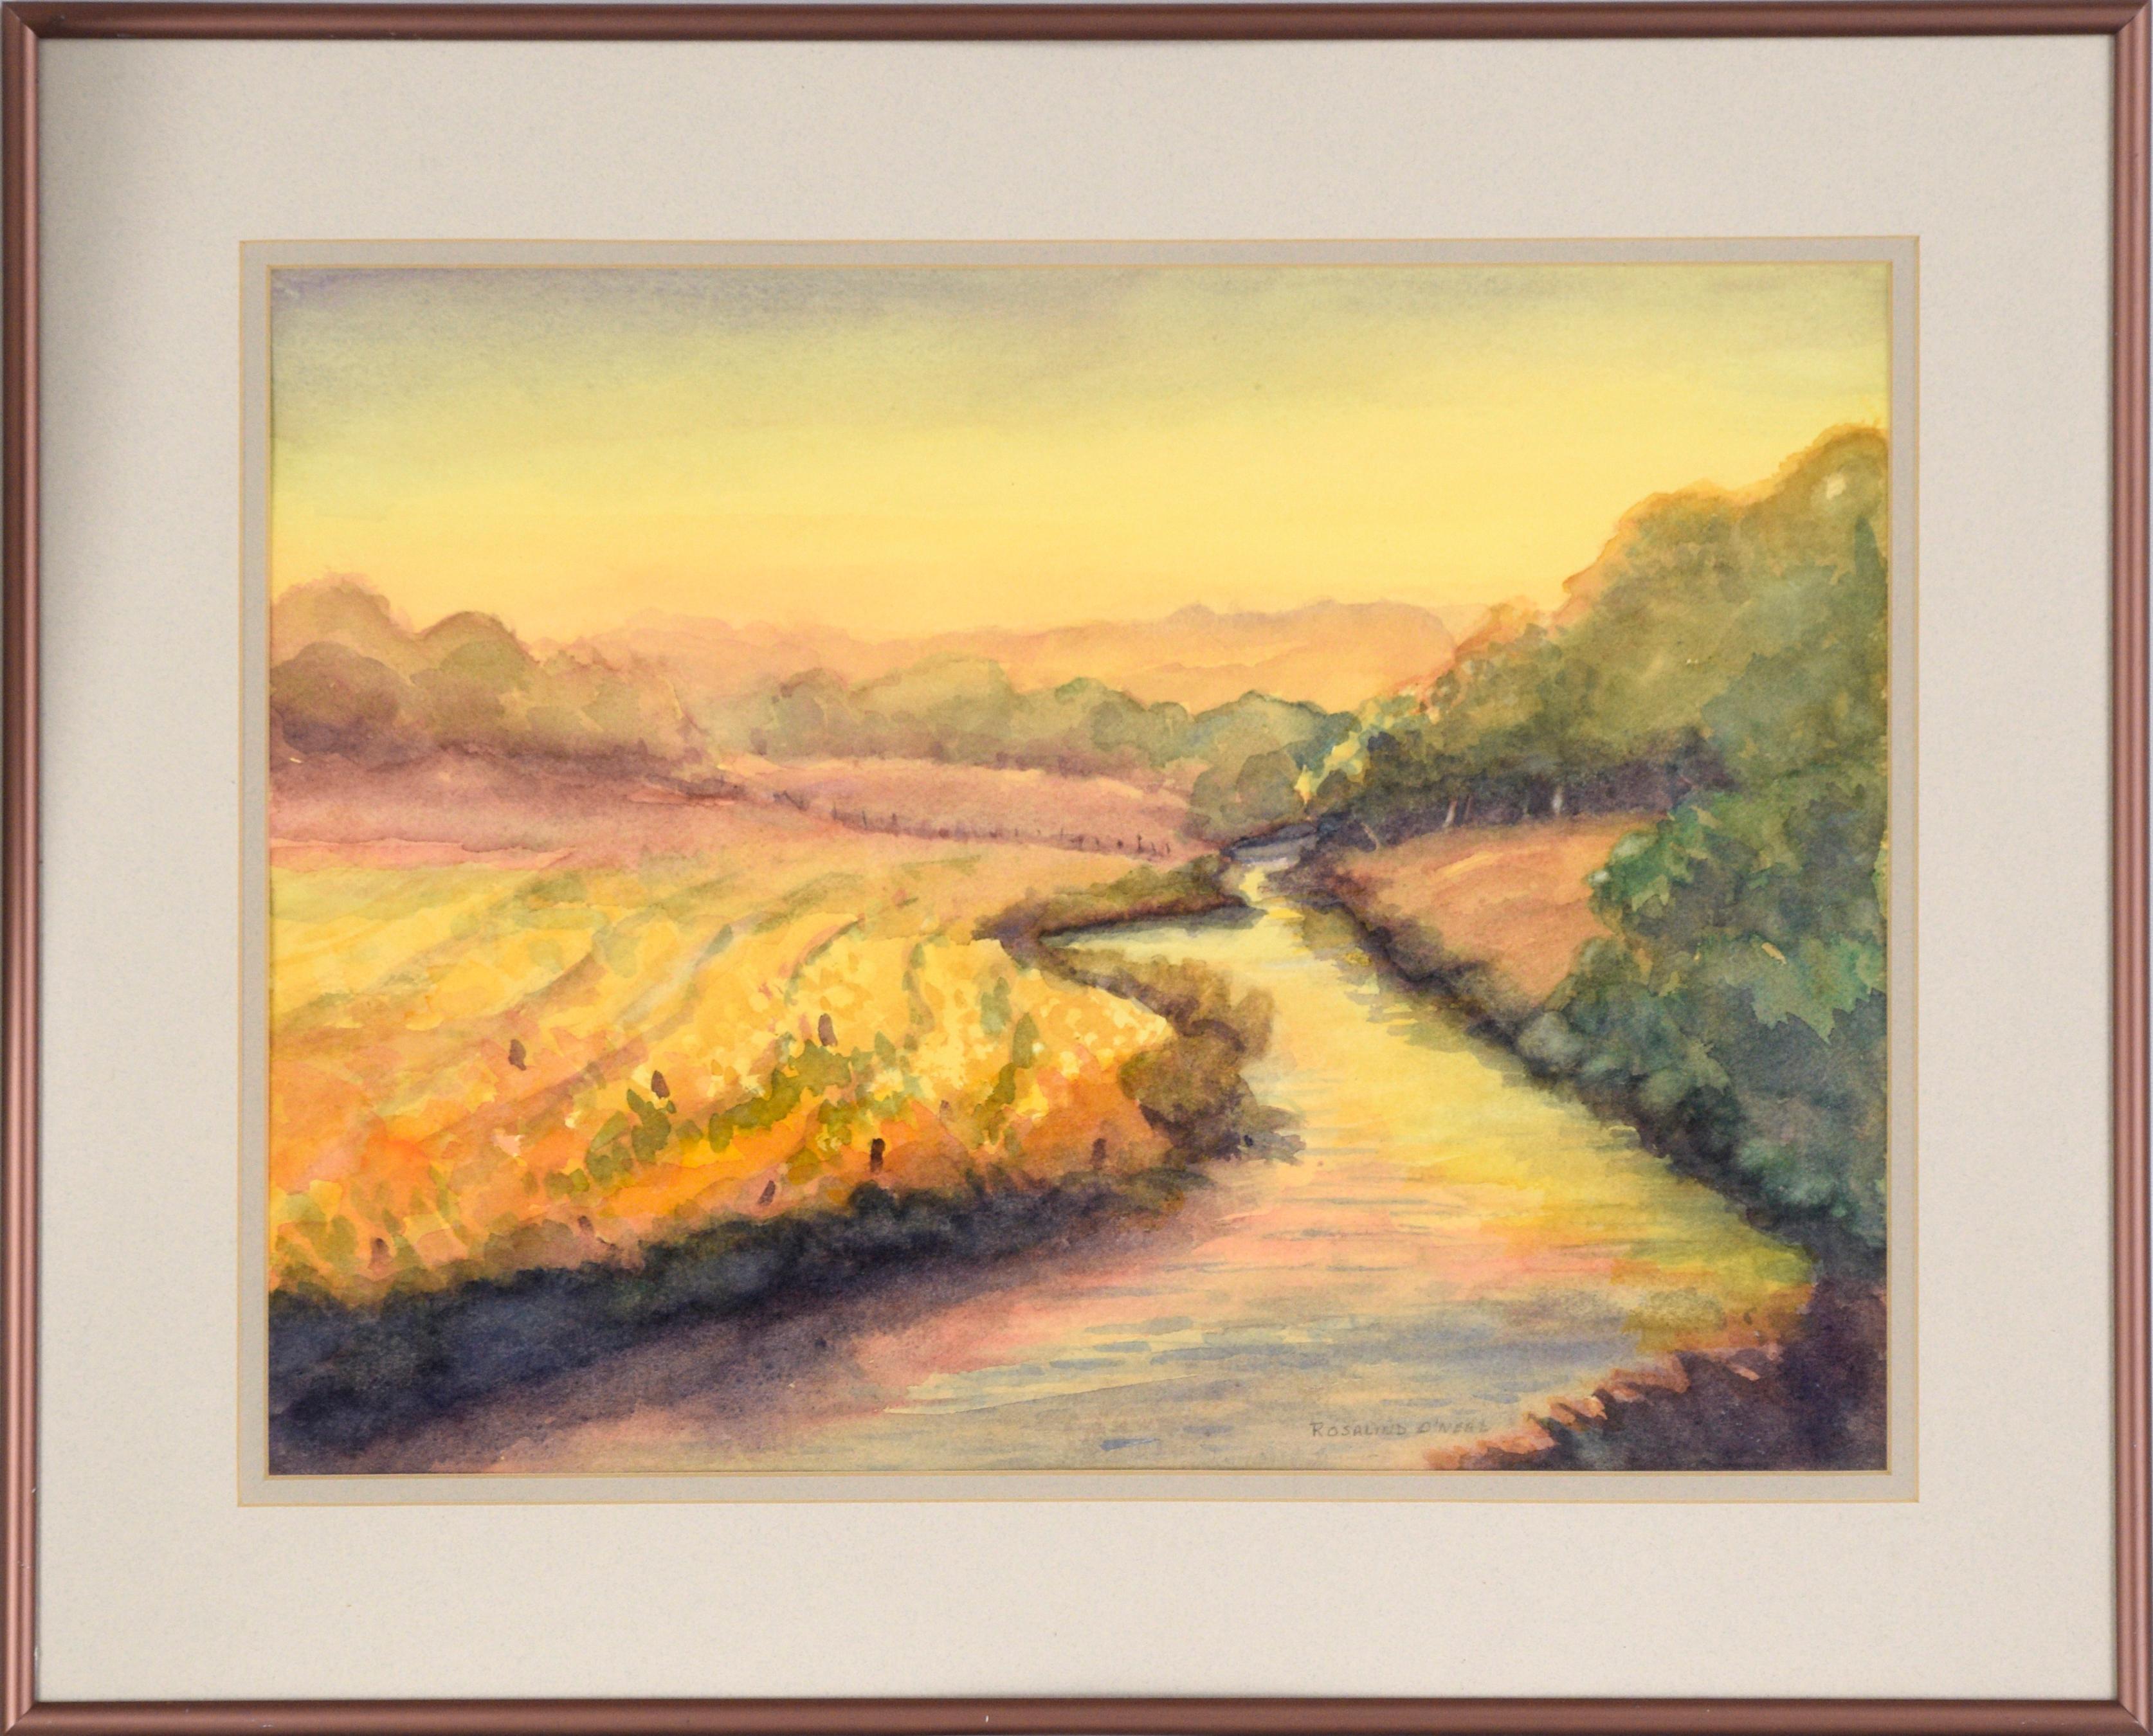 Rosalind O'Neal Landscape Art - Golden Hour at the River - Watercolor Landscape on Paper